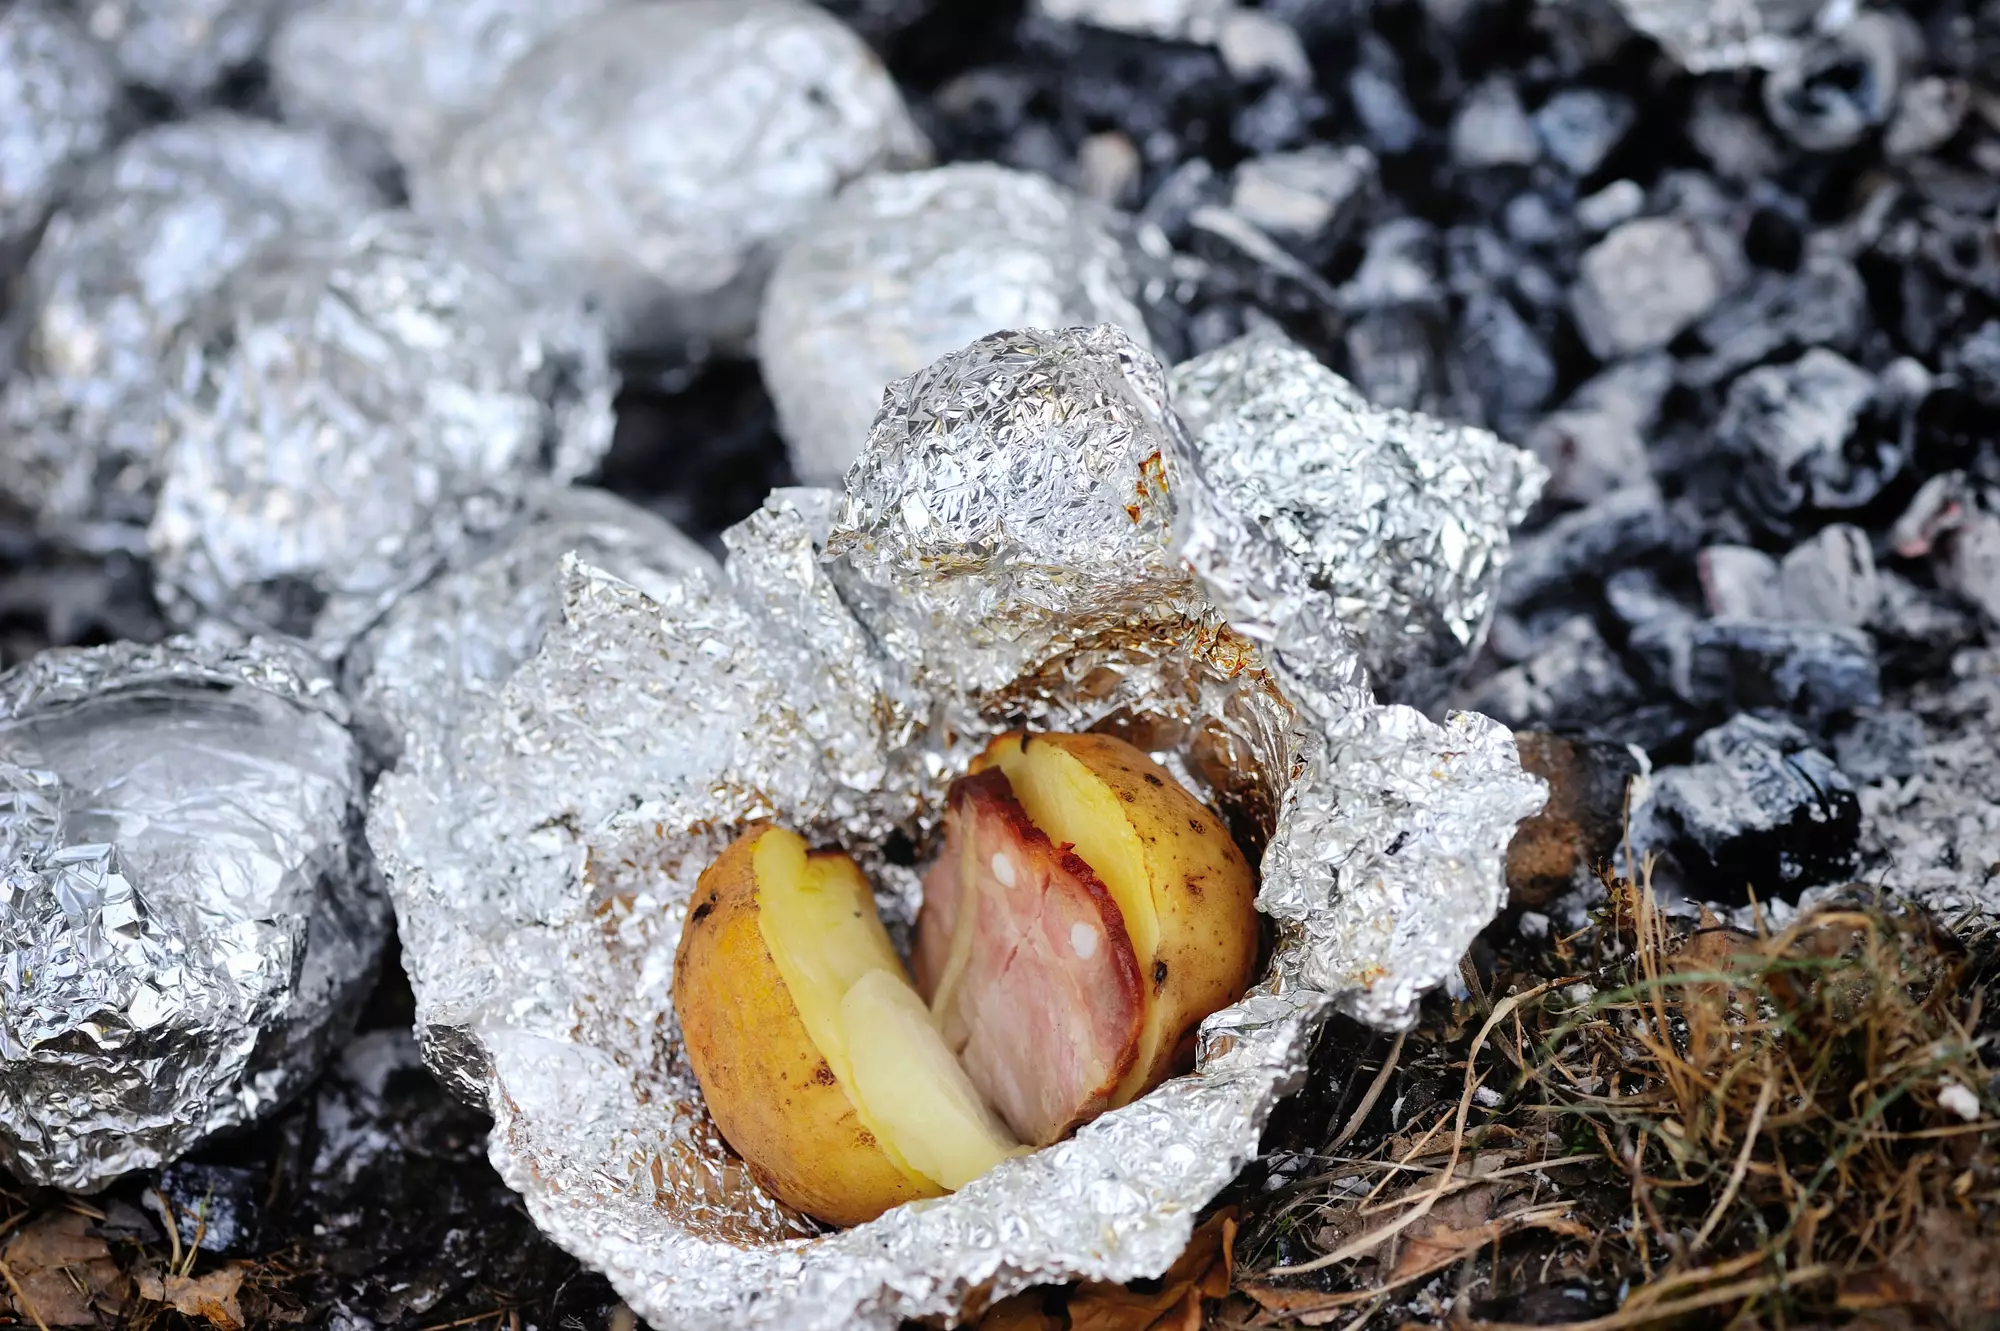 Картошка с салом в фольге, запеченная в духовке, пошаговый рецепт с фото на ккал